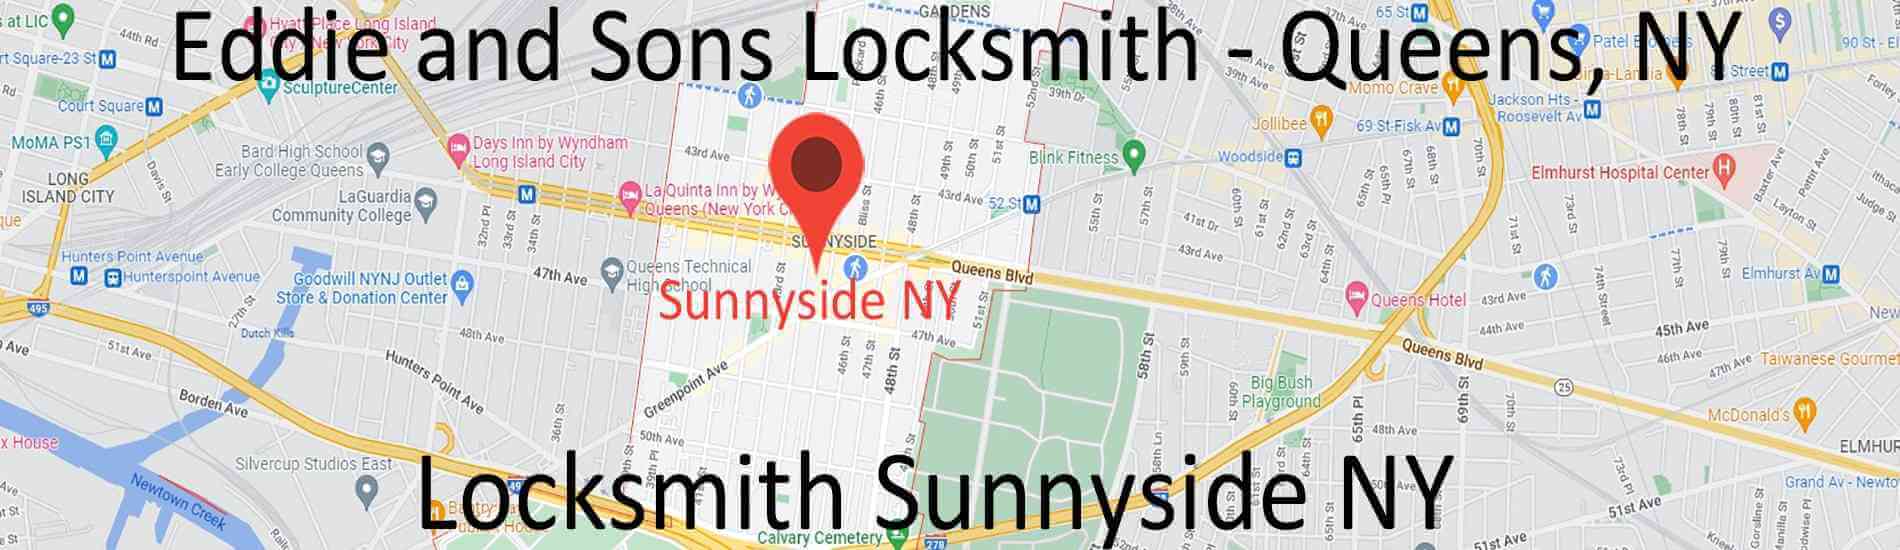 locksmith-sunnyside-ny